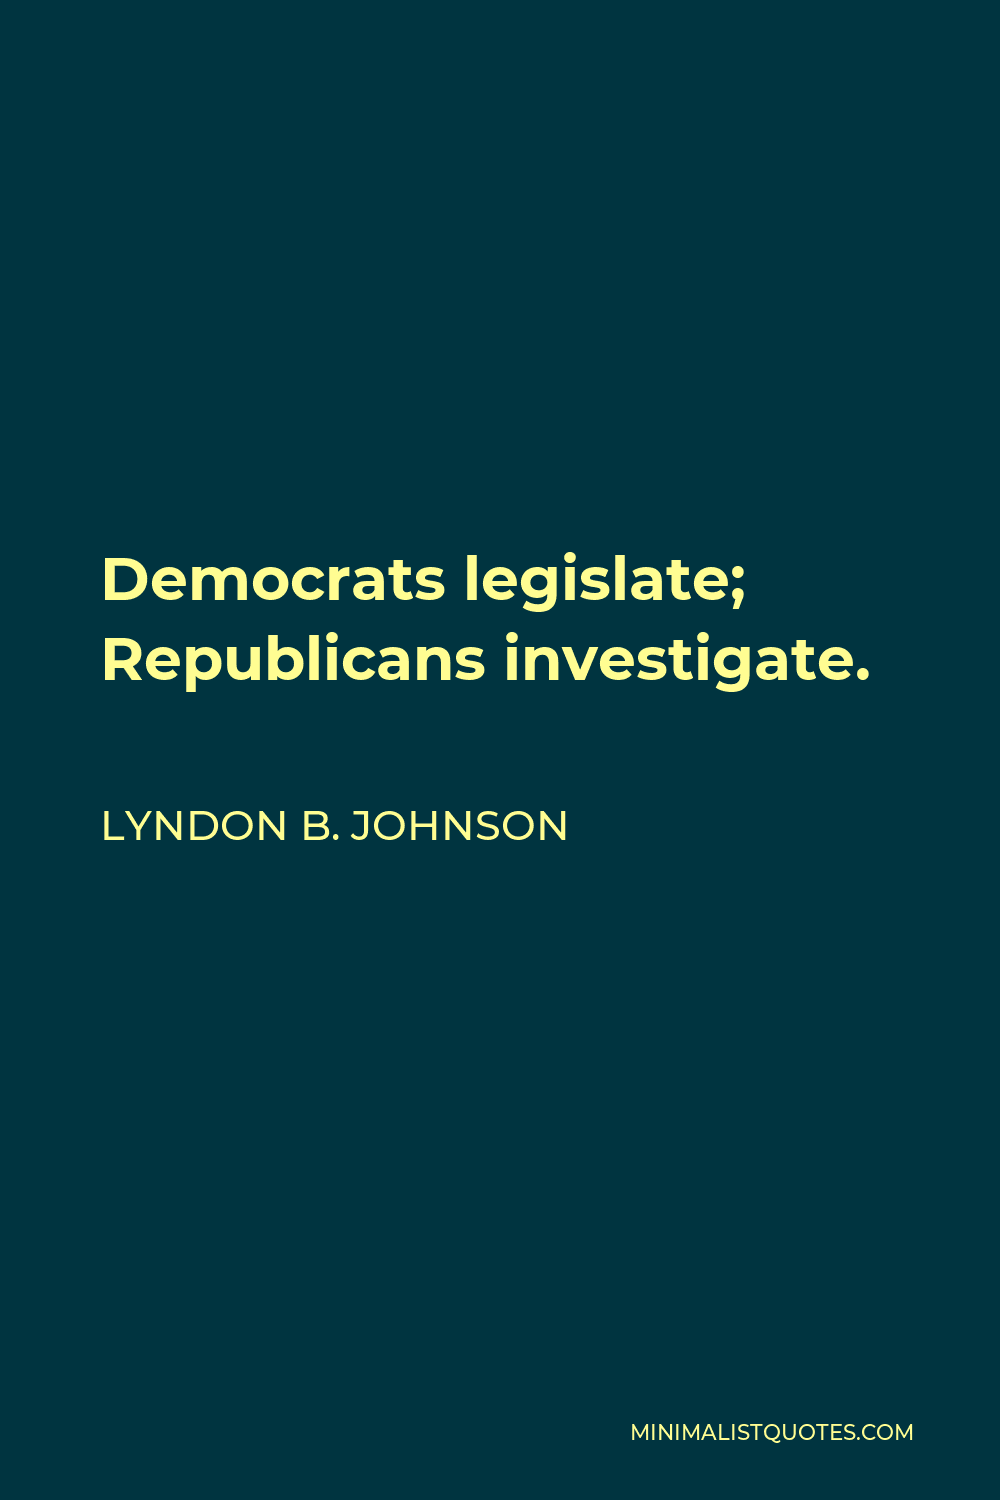 Lyndon B. Johnson Quote - Democrats legislate; Republicans investigate.